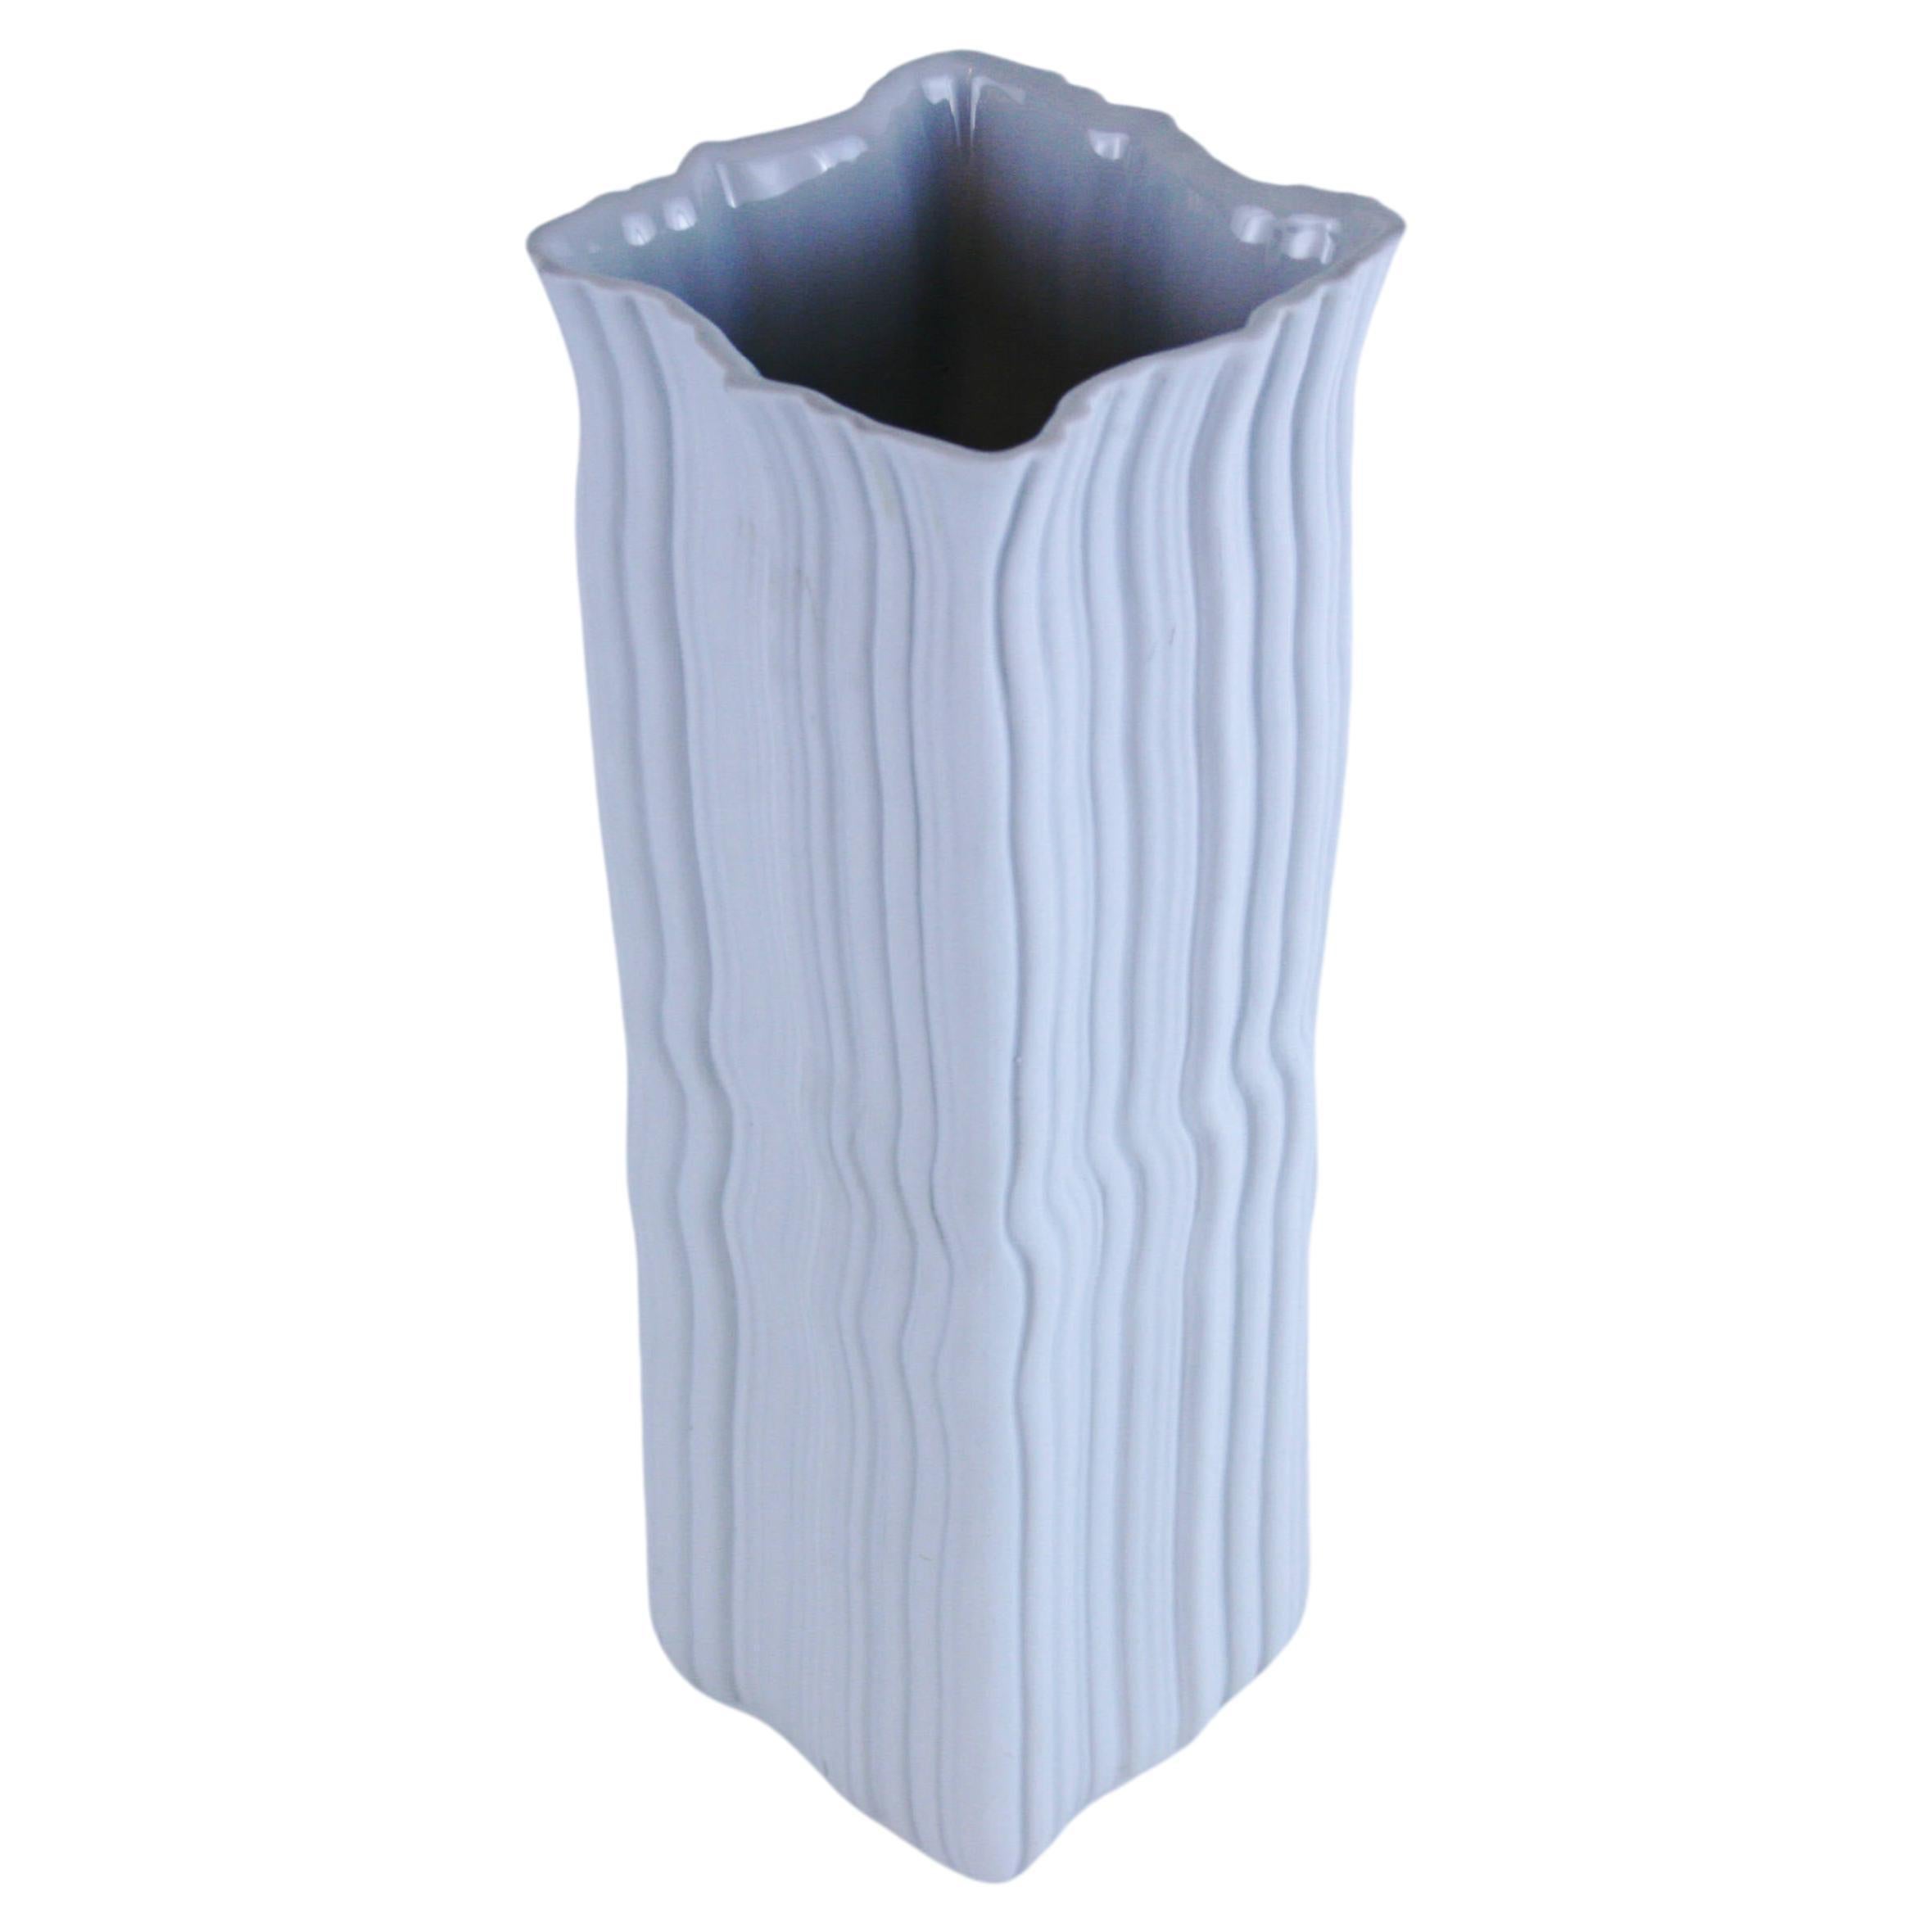 Vase aus weiem Biskuitporzellan im Design von Naaman Israel, 1990er Jahre